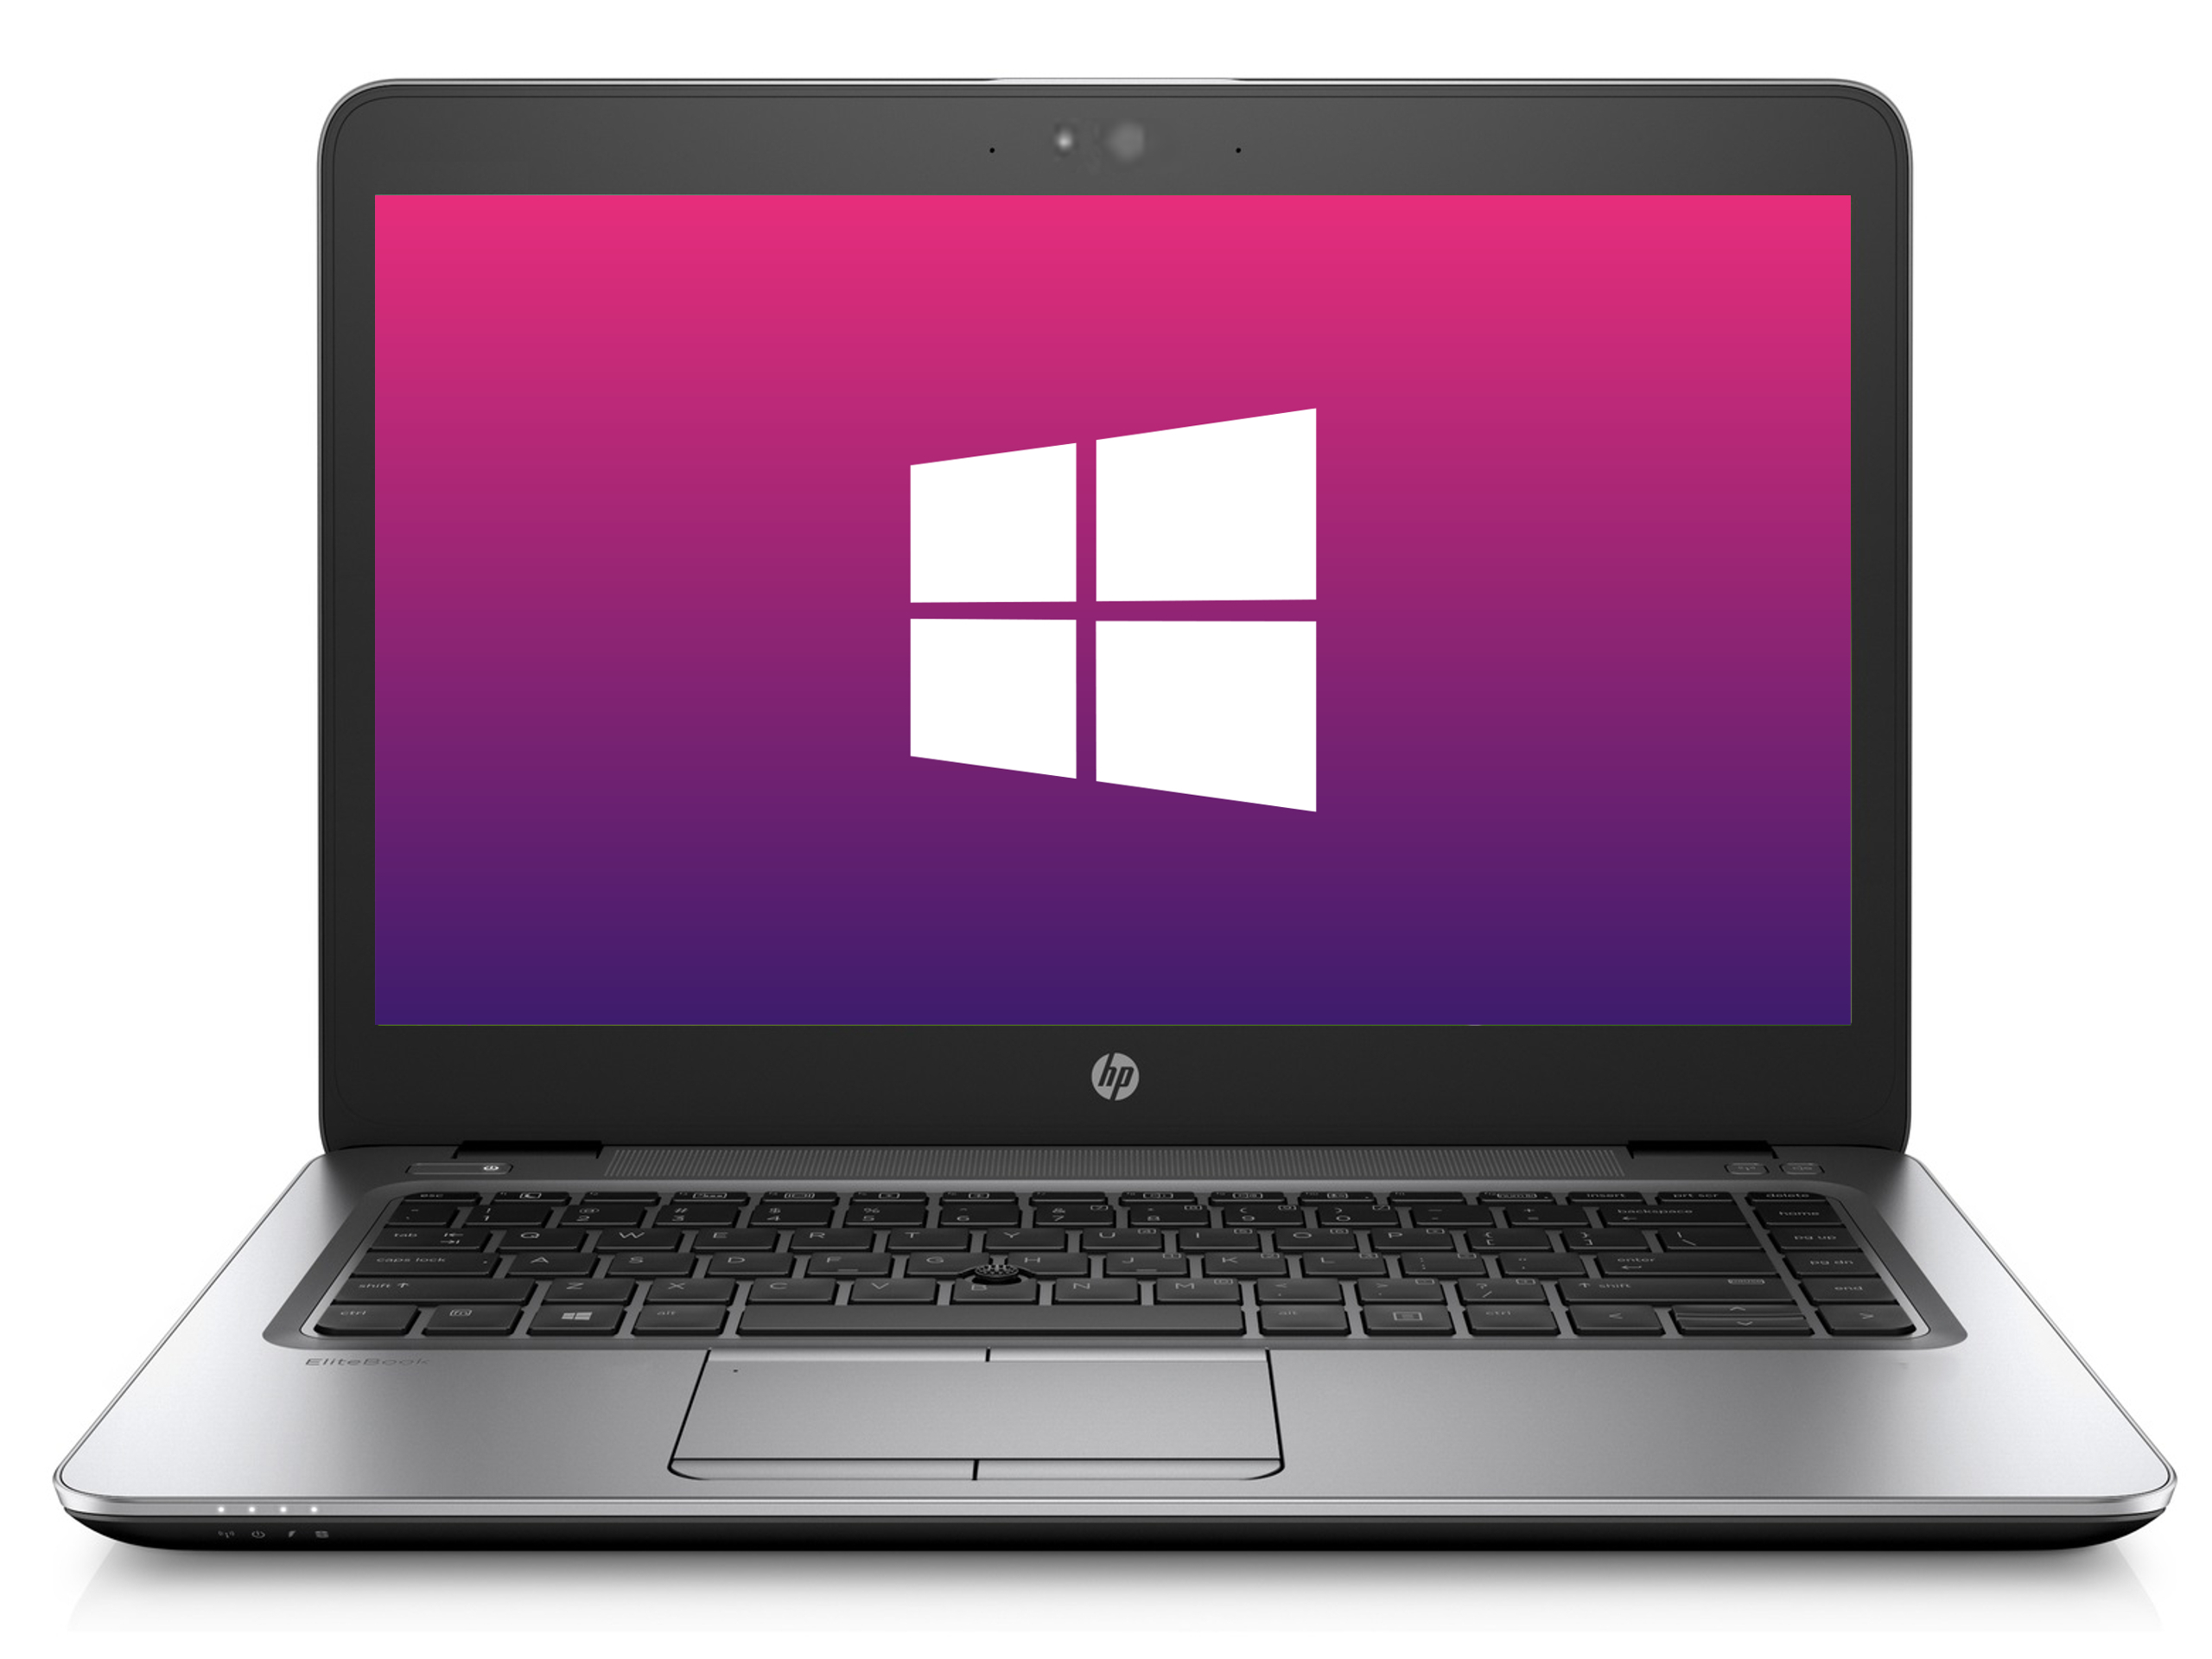 Ultrabook HP 840 G2 * 1600x900 * 8GB * 240GB SSD